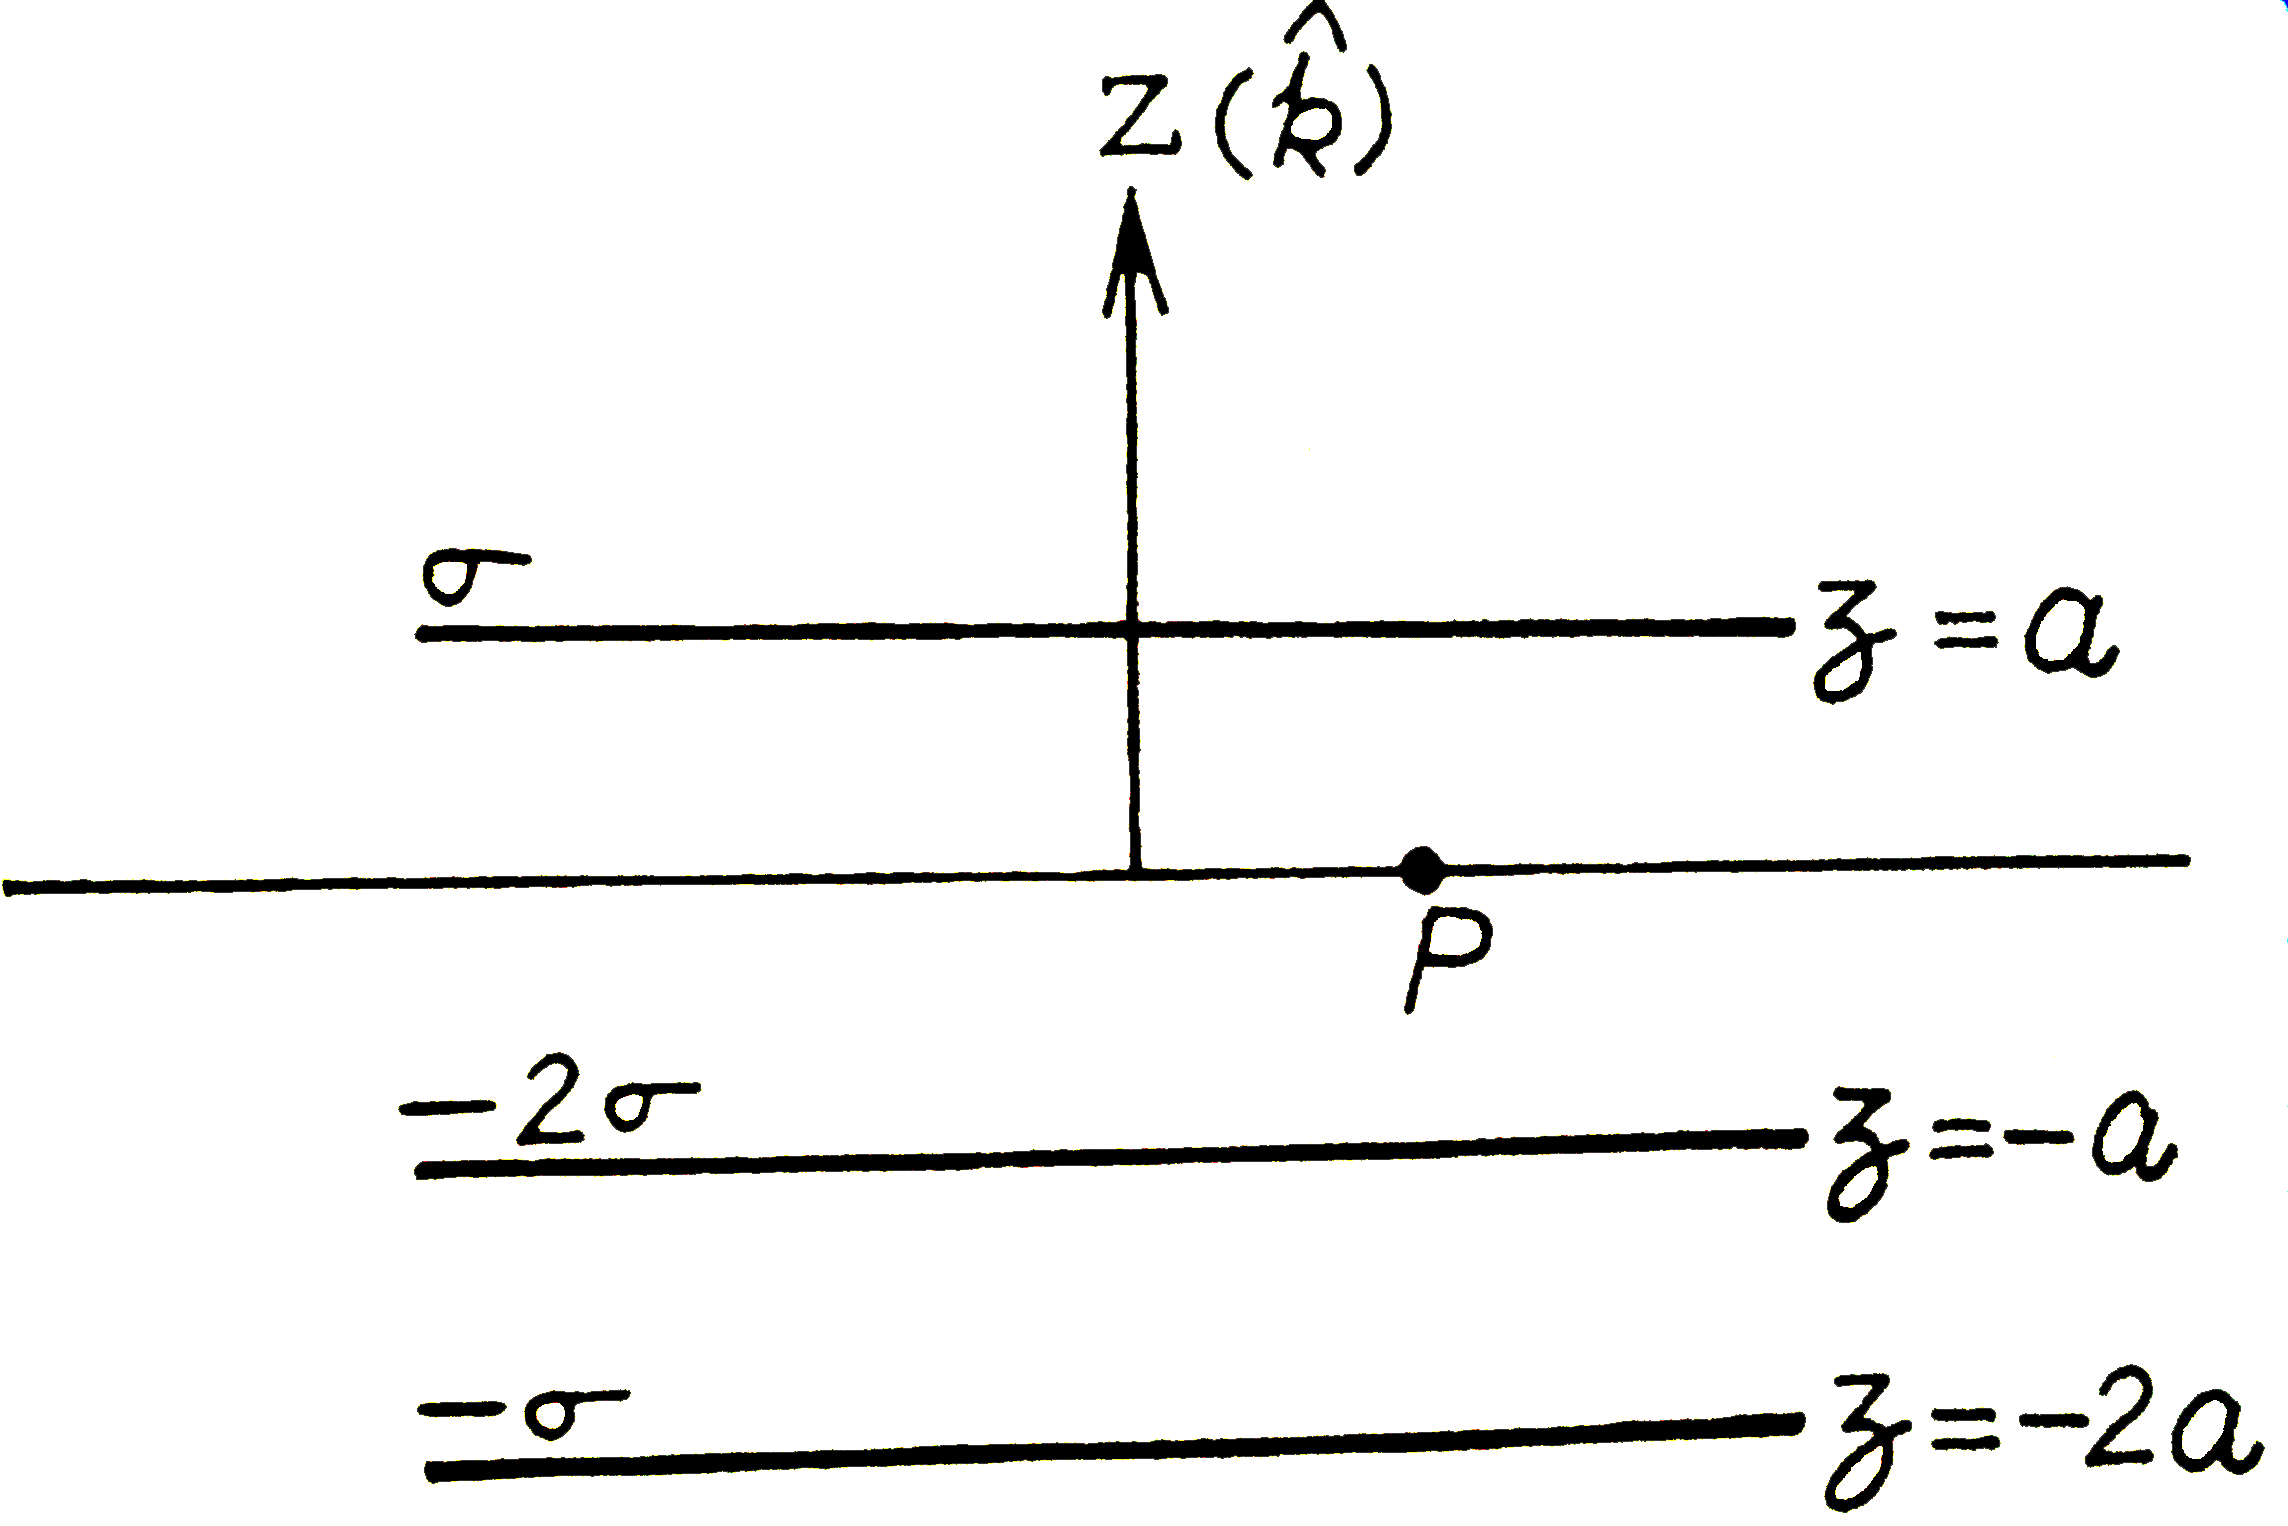 तीन अनाथ की आवेश की चादर X-Y  तल में परस्पर समांतर रखी है जिनके एकसमान आवेश घनत्व चित्रानुसार है बिंदु P पर विधुत क्षेत्र है